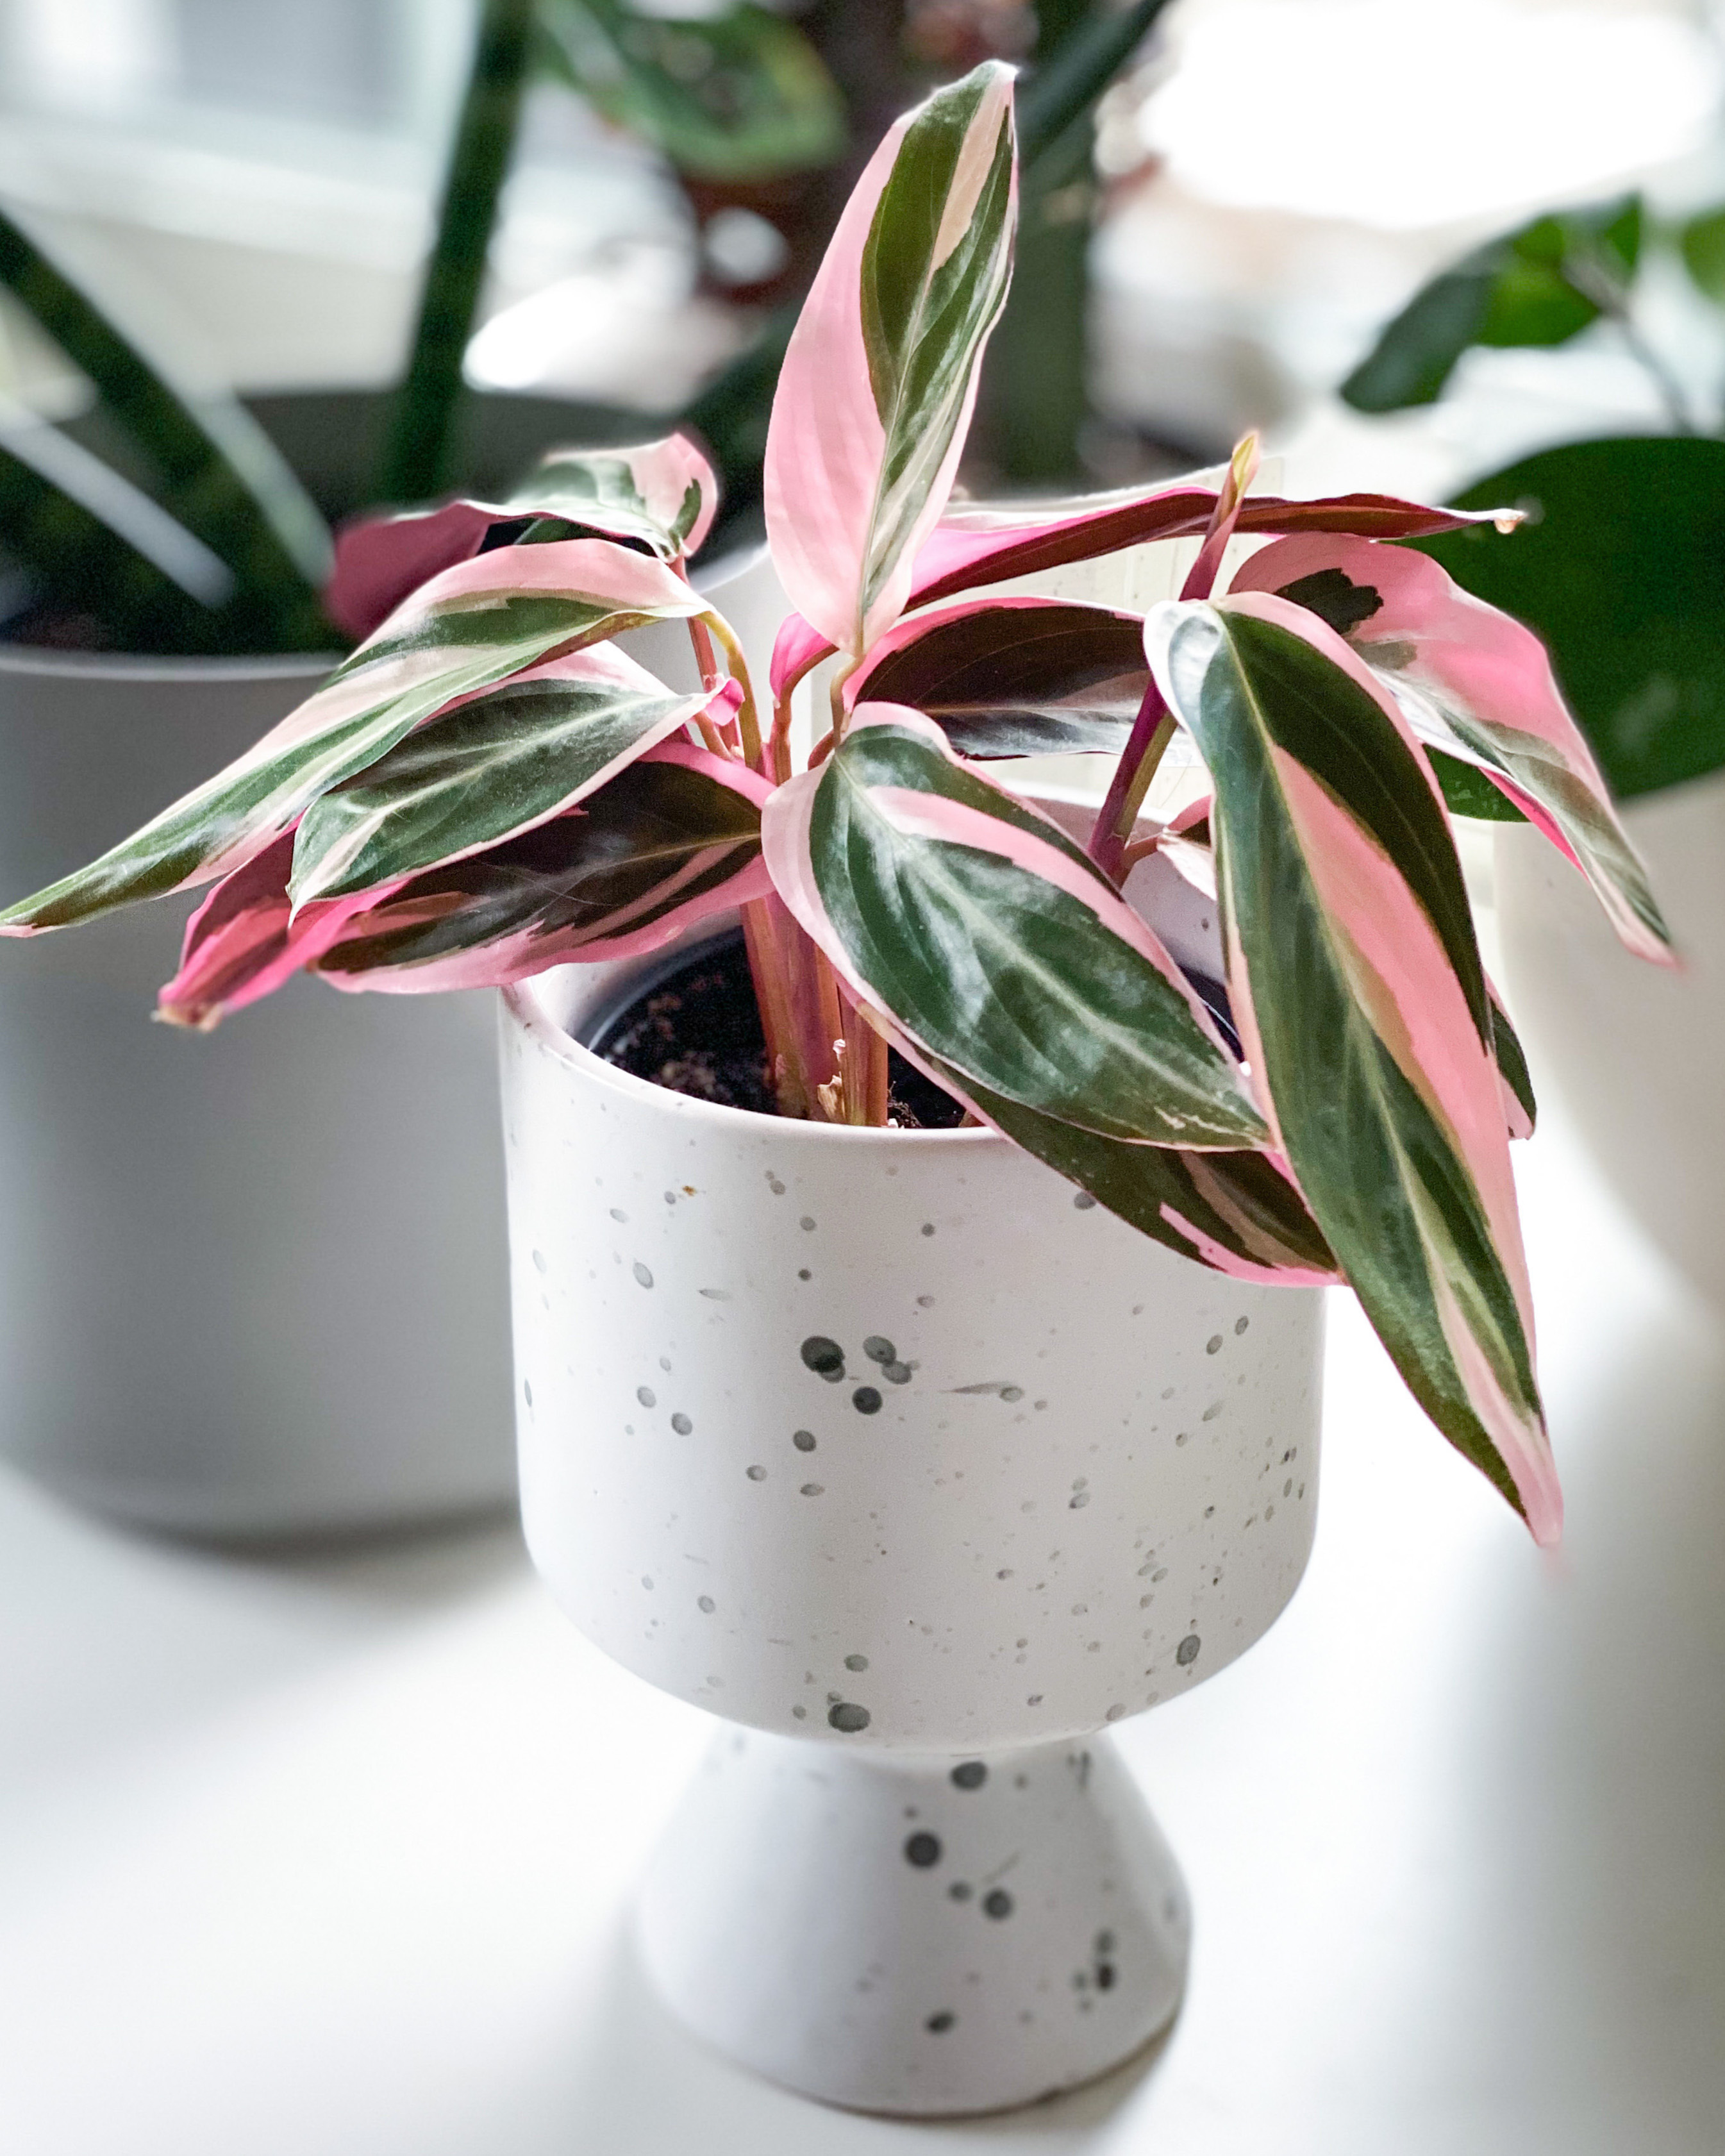 Belle vere: le migliori piante da appartamento con foglie ...